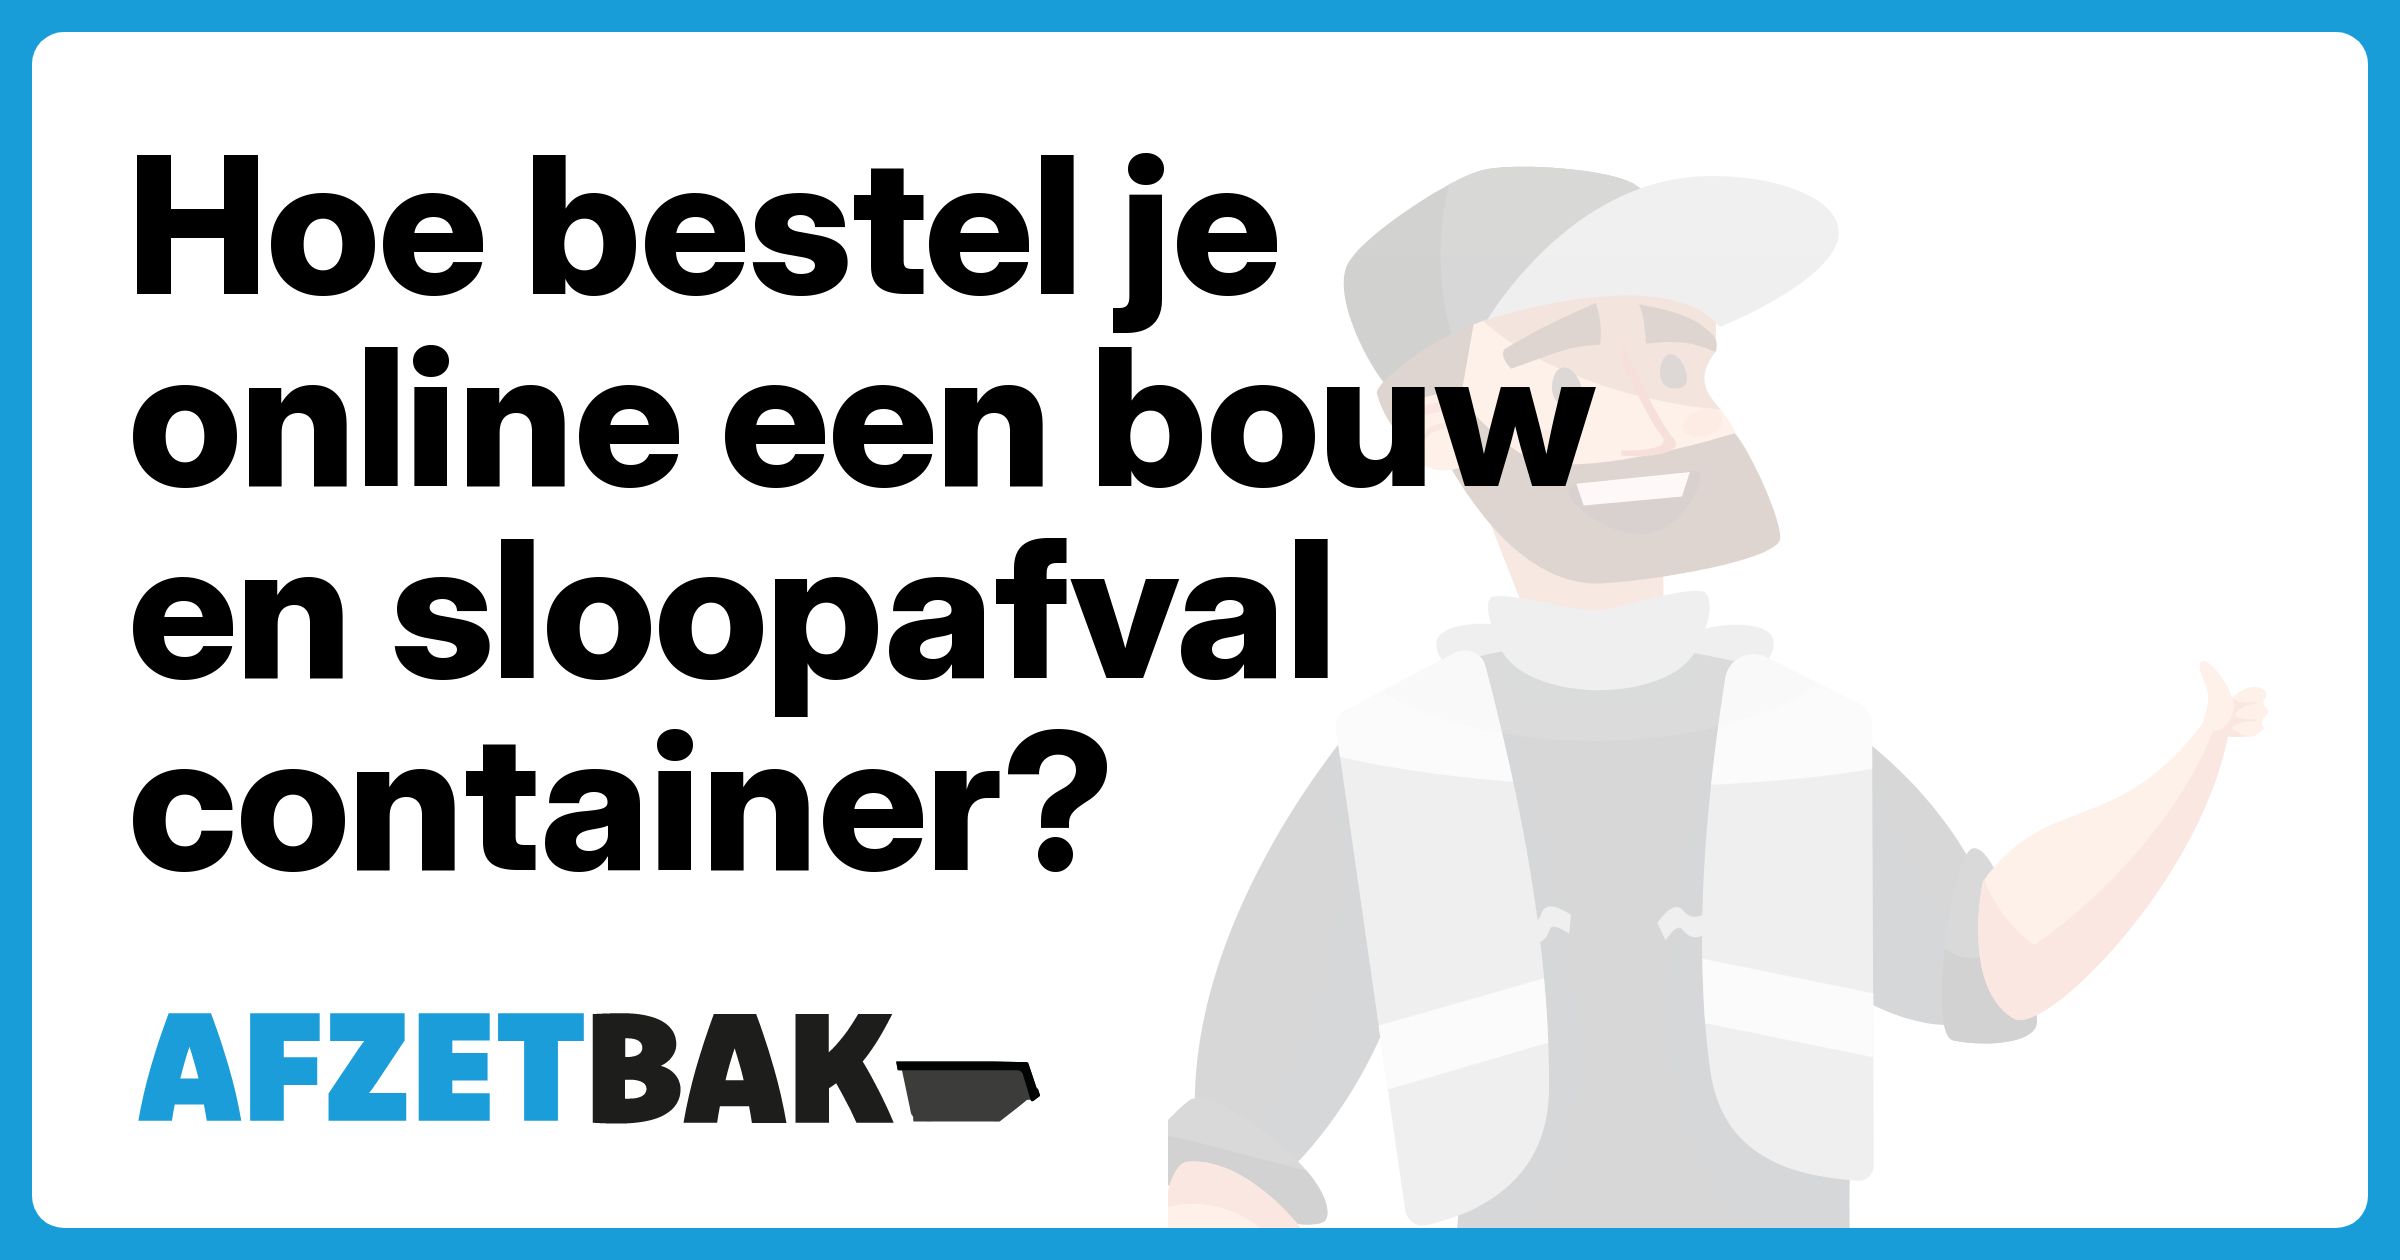 Hoe bestel je online een bouw en sloopafval container? - Afzetbak.nl